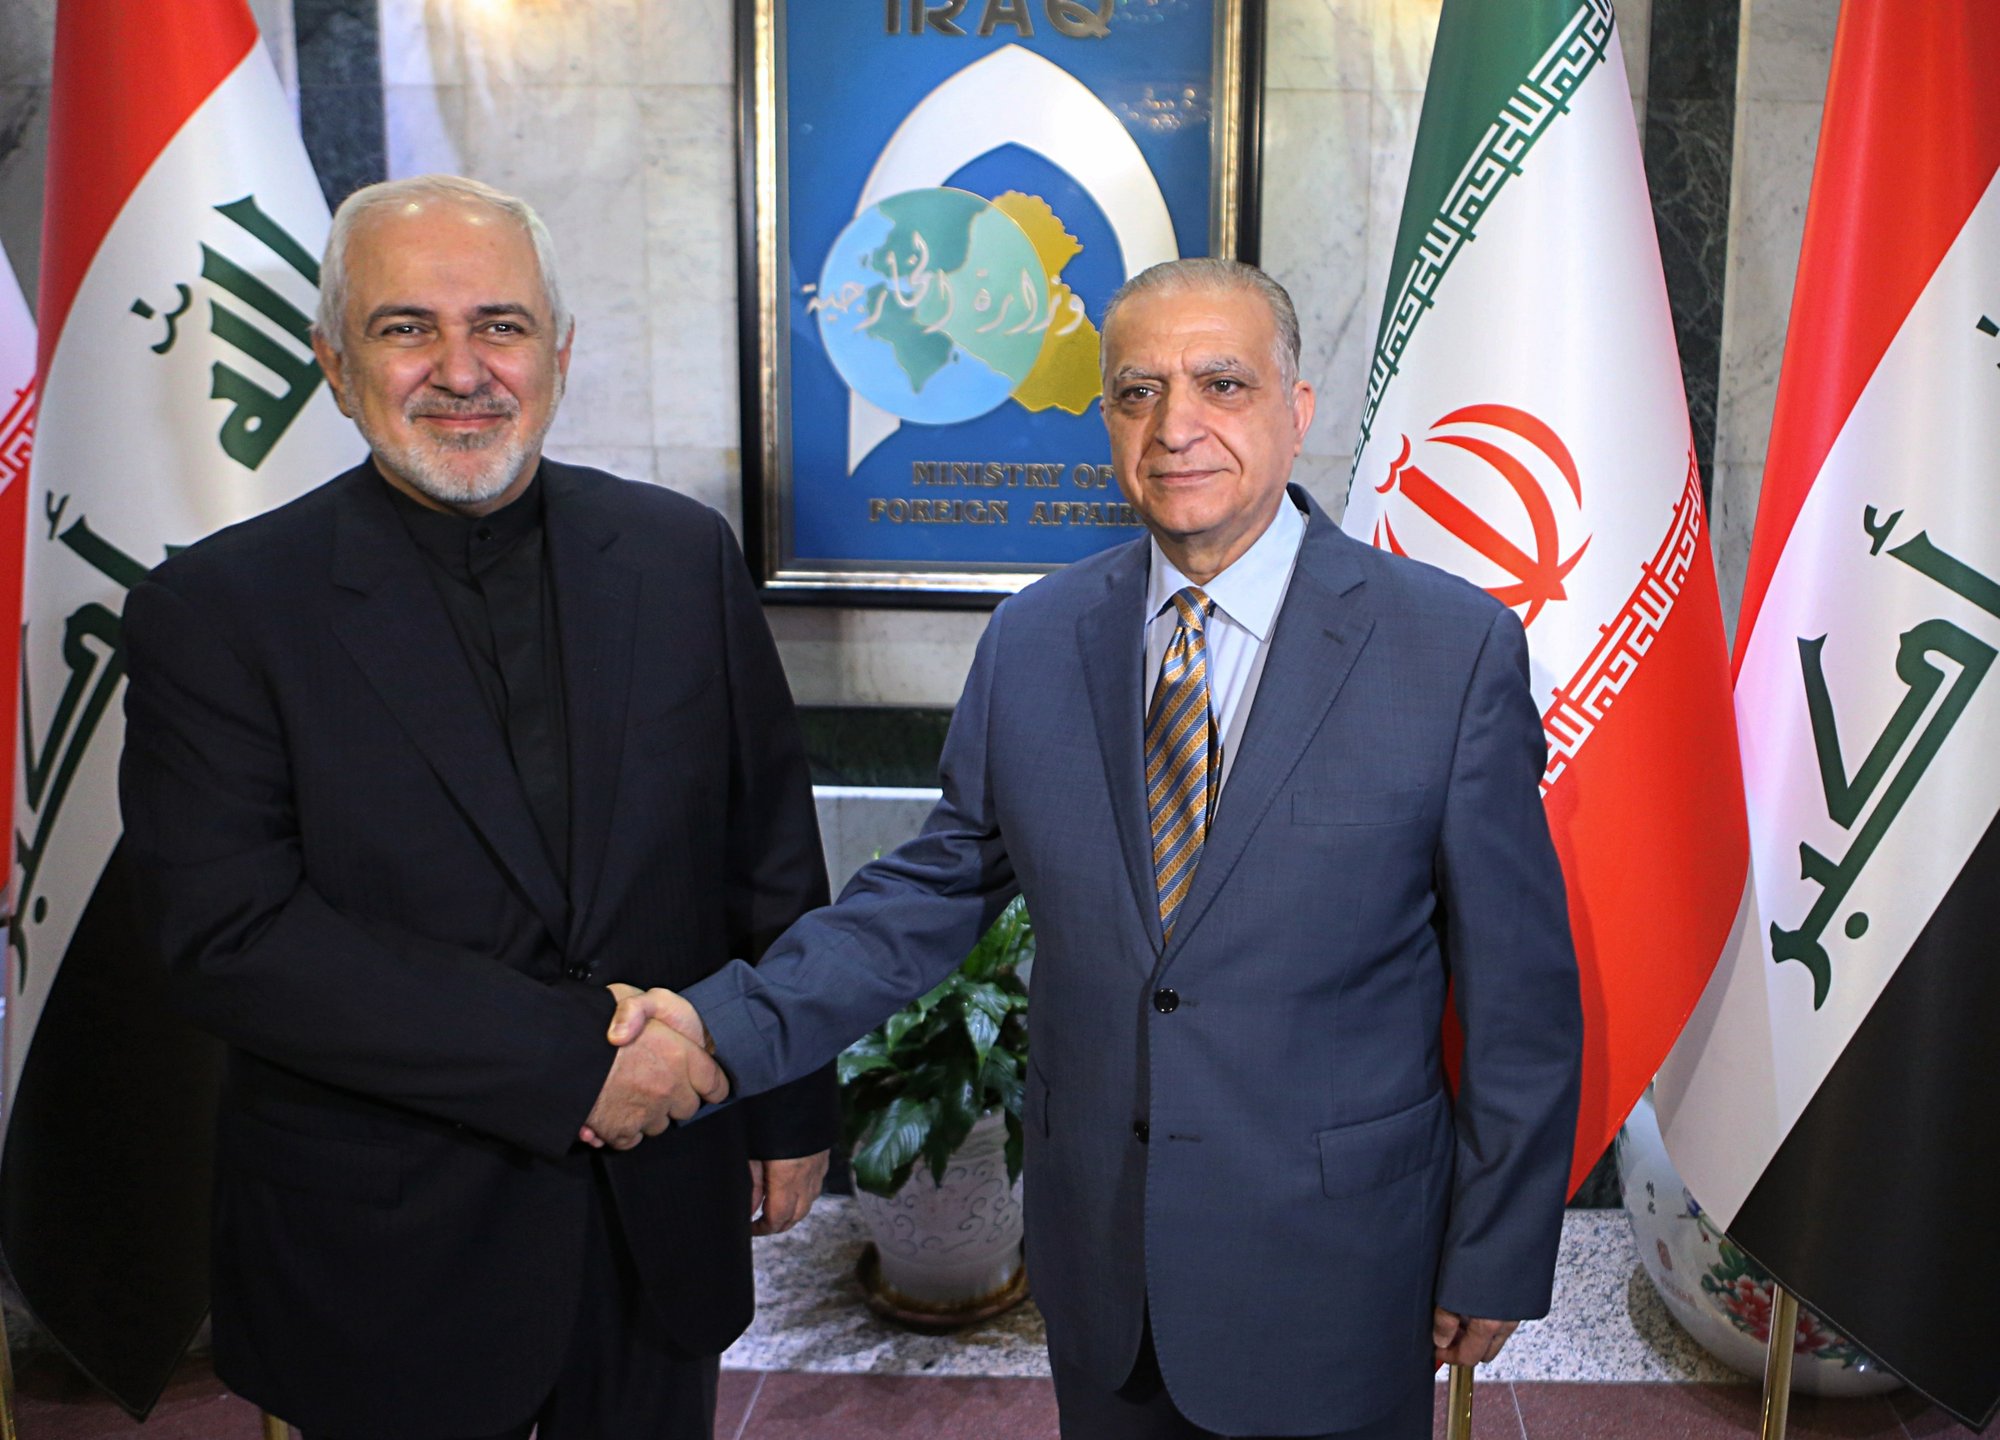 โมฮัมหมัด จาวัด ซารีฟ รัฐมนตรีต่างประเทศของอิหร่าน (คนซ้าย) จับมือกับ โมฮัมเหม็ด อัล – ฮาคิม  รัฐมนตรีต่างประเทศของอิรัก (คนขวา) ขณะทำการแถลงข่าวร่วมกัน